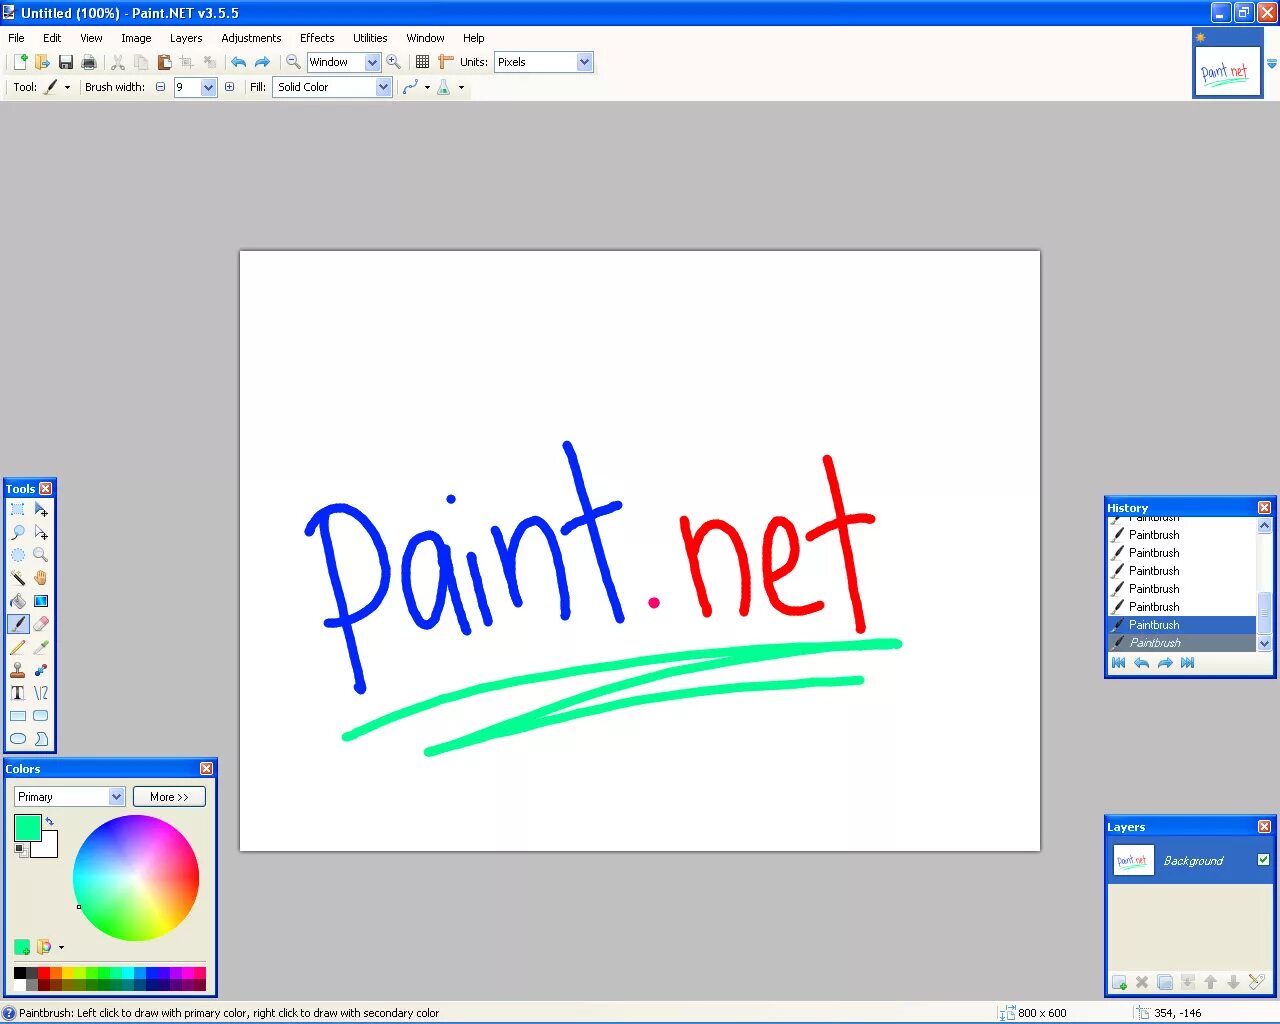 Paint на английском. Паинт нет. Изображения в Paint net. Графический редактор паинт нет. Фоторедактор Paint net.